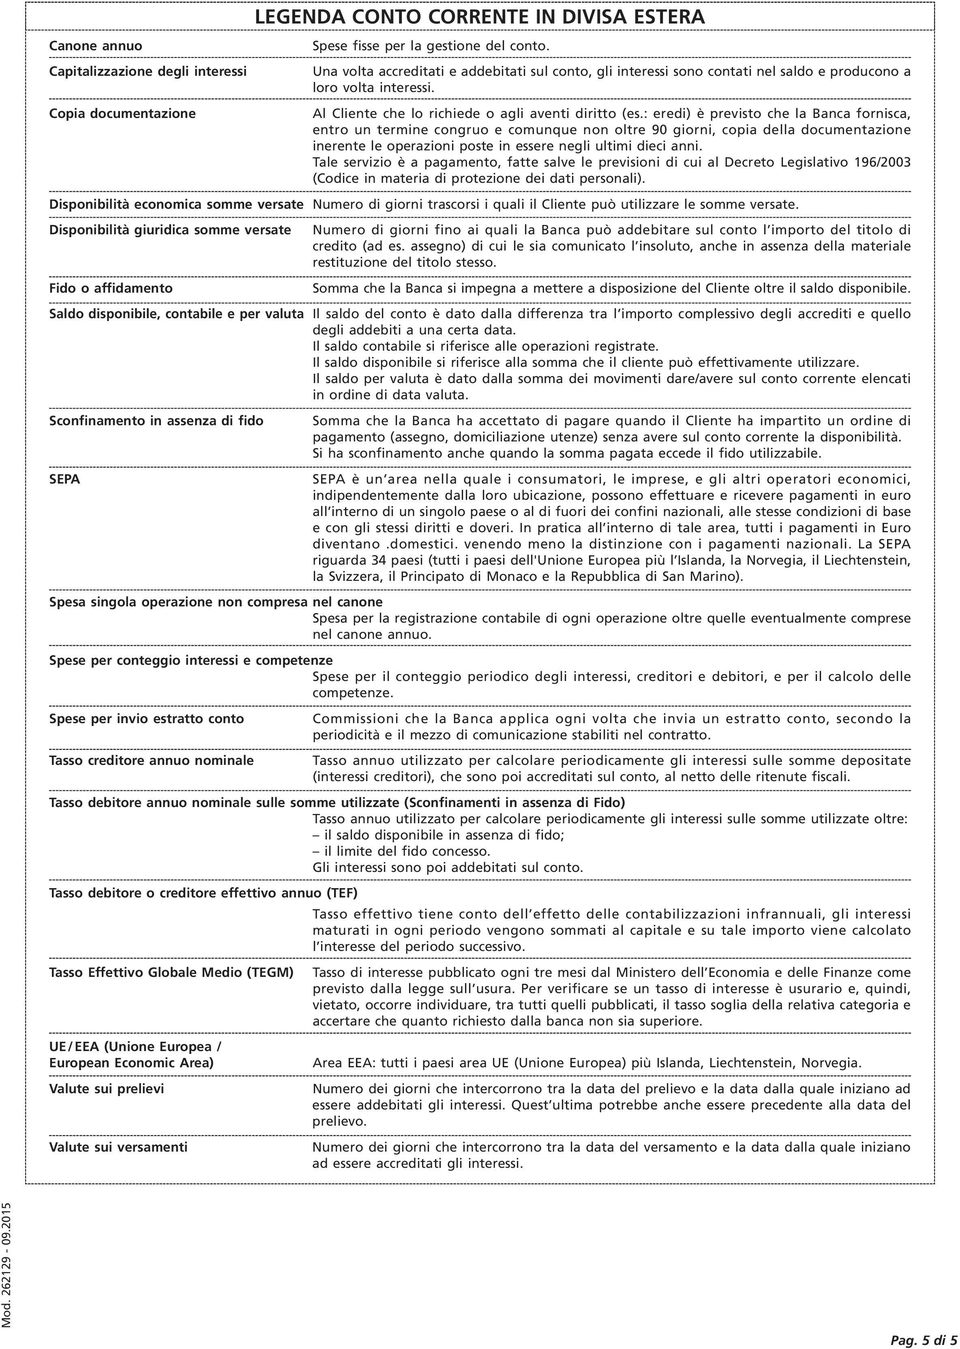 Copia documentazione Al Cliente che lo richiede o agli aventi diritto (es.